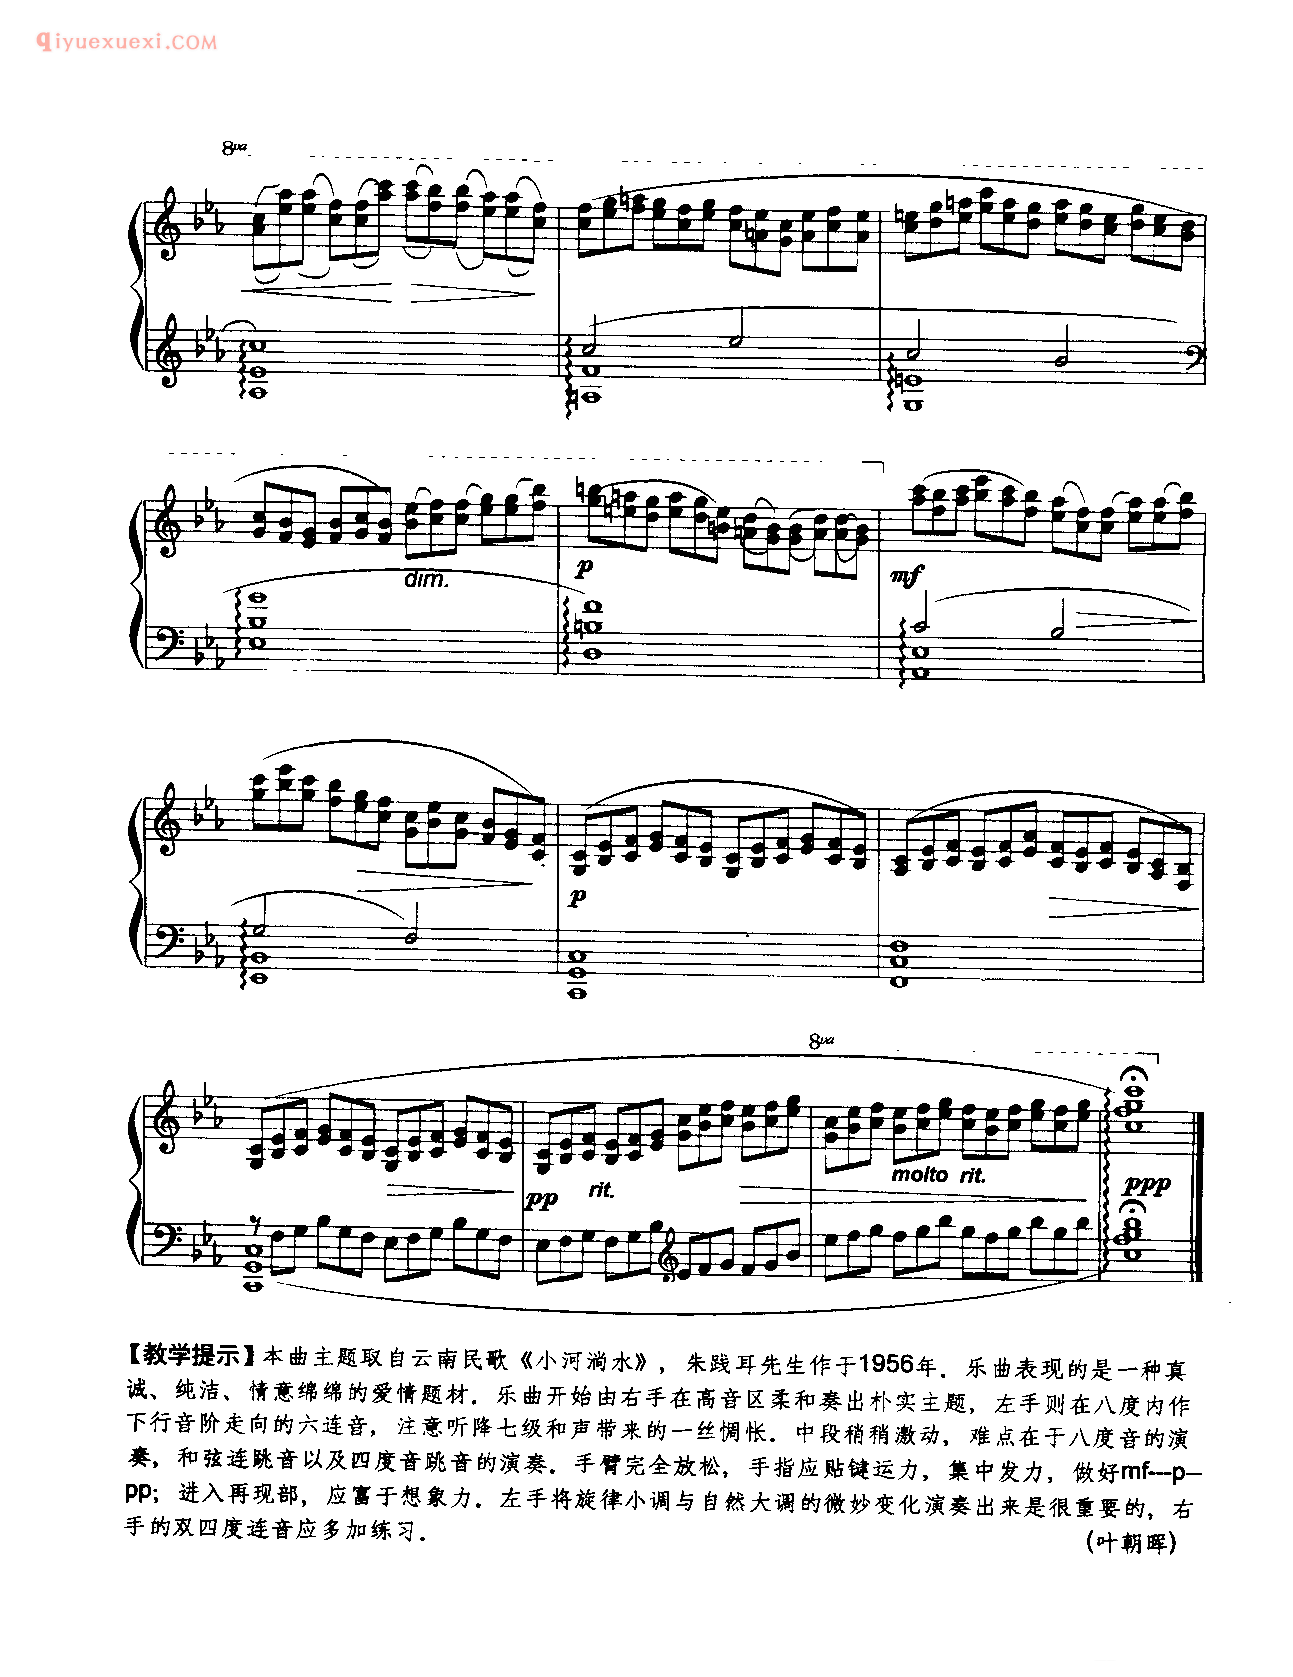 中国钢琴乐曲谱_序曲第二号《流水》_朱践耳曲